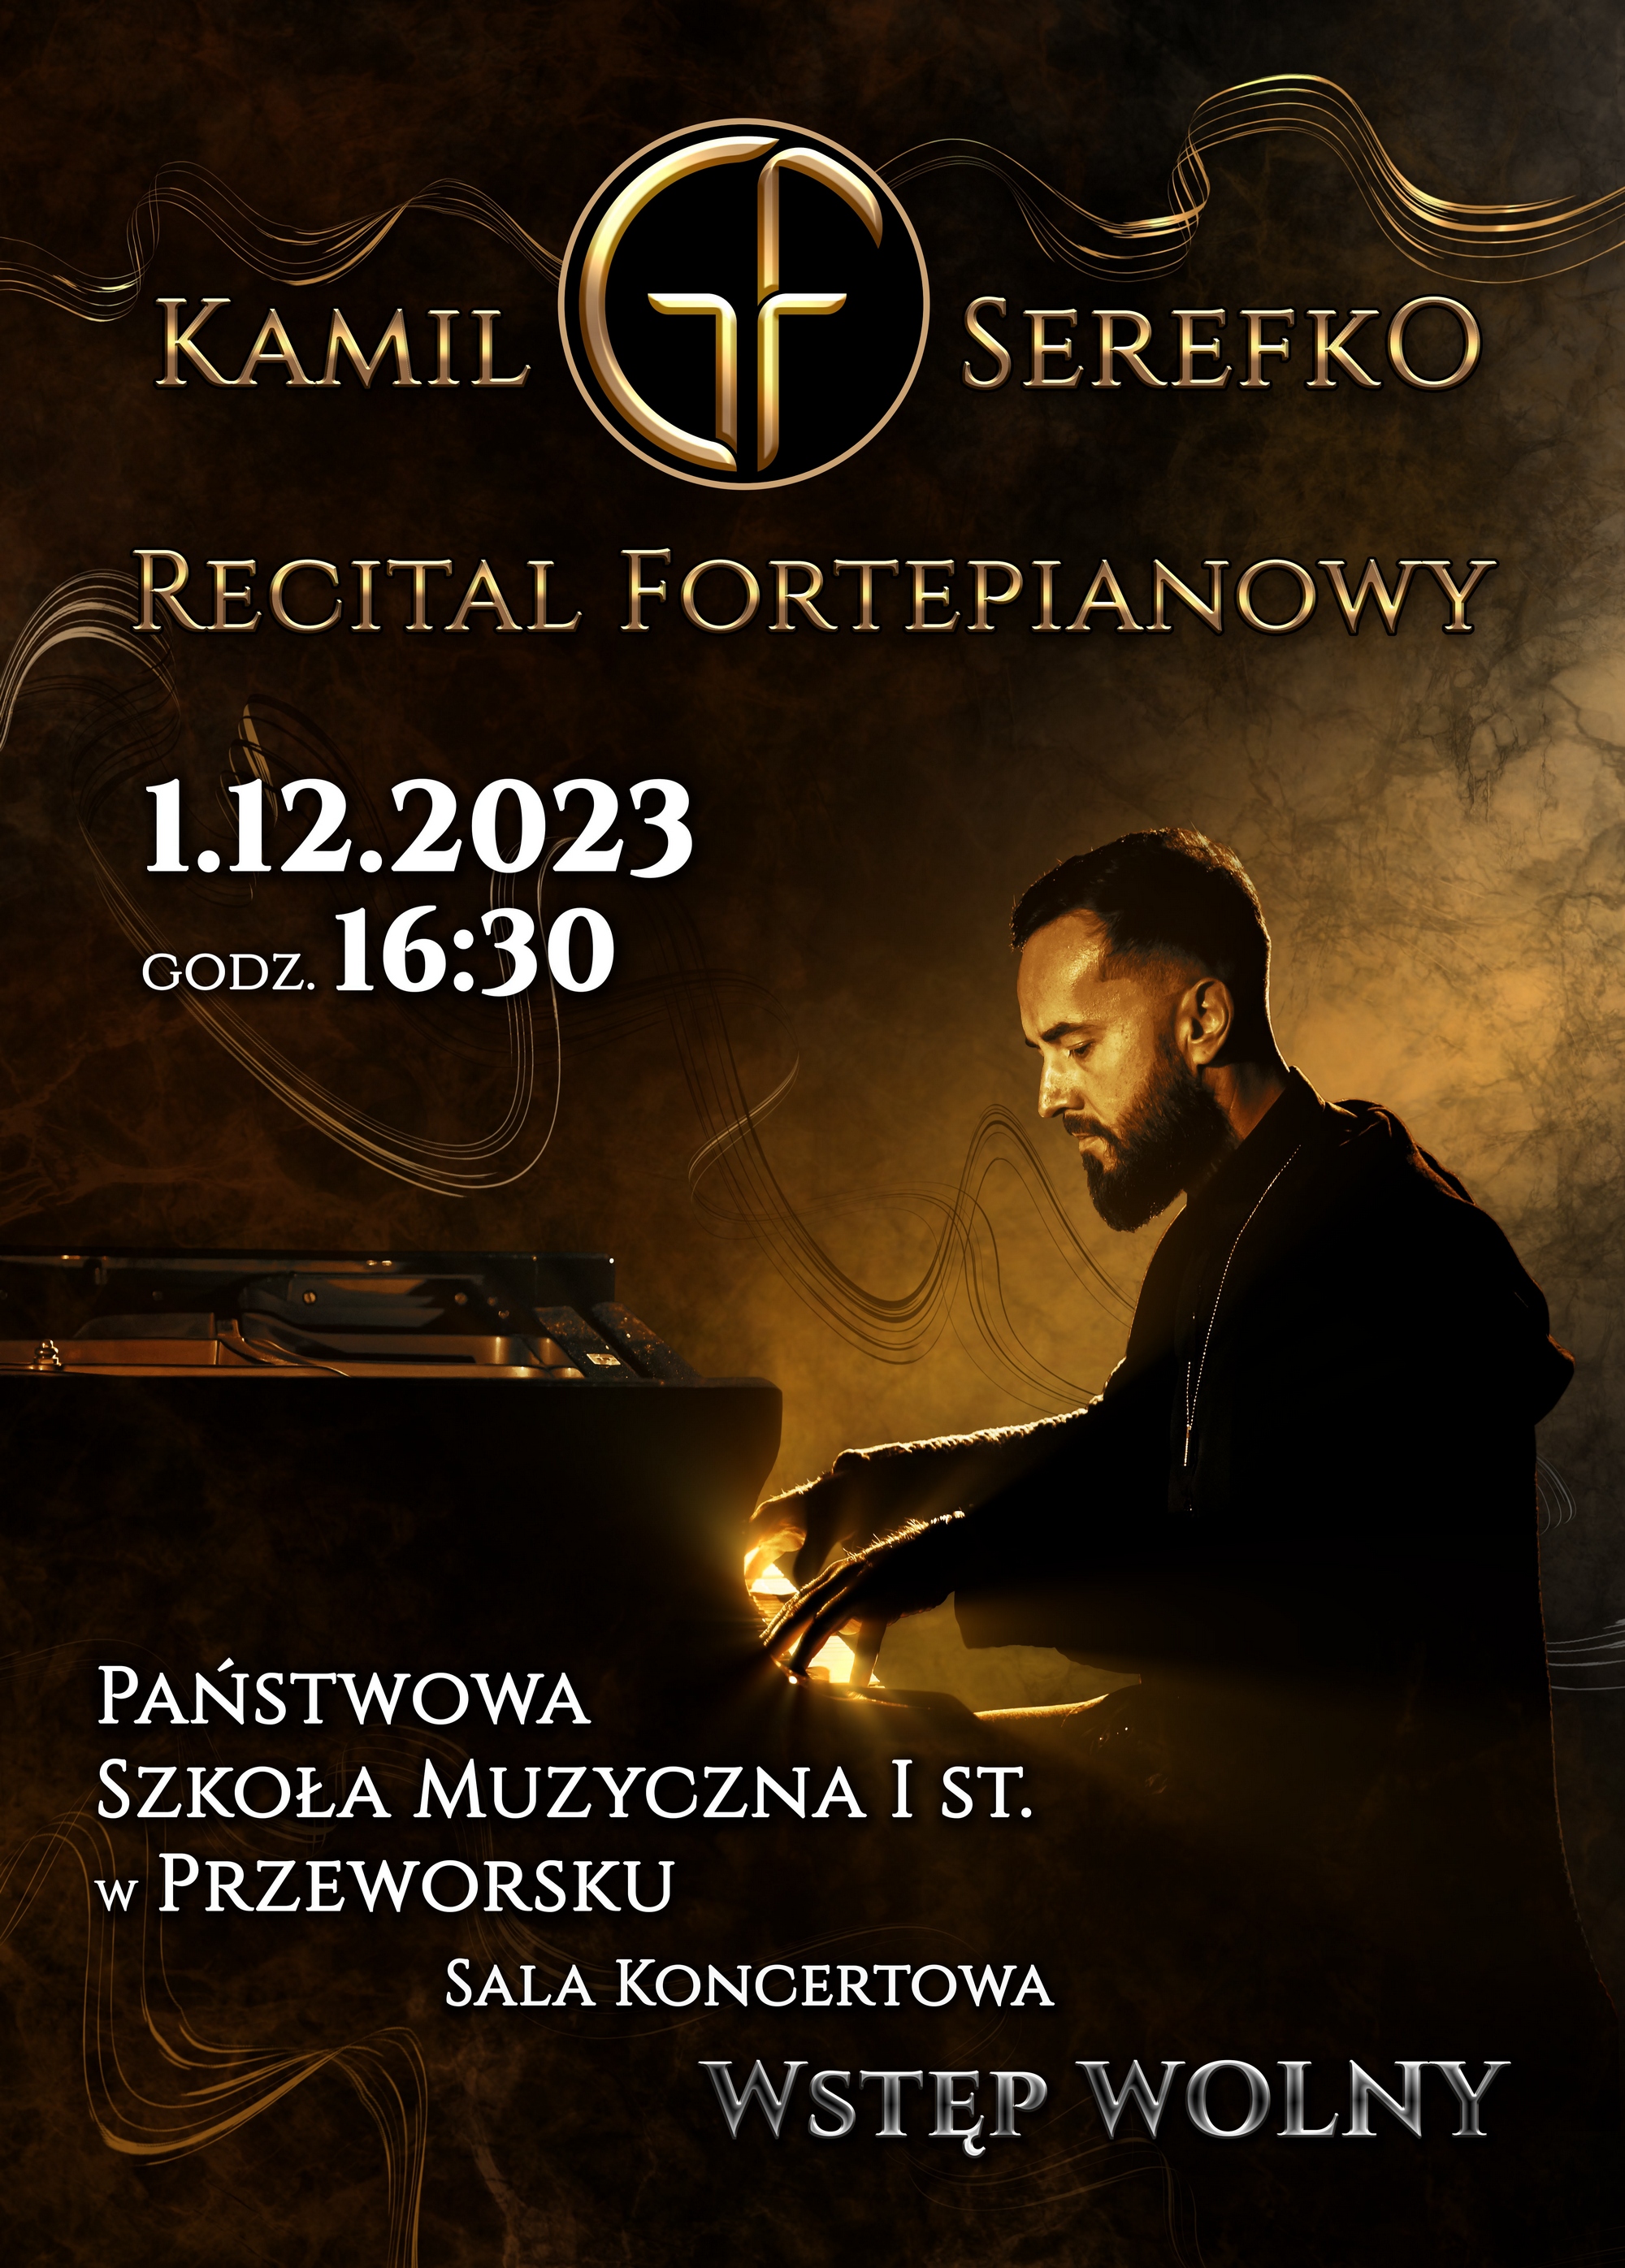 Recital fortepianowy Kamila Serefko